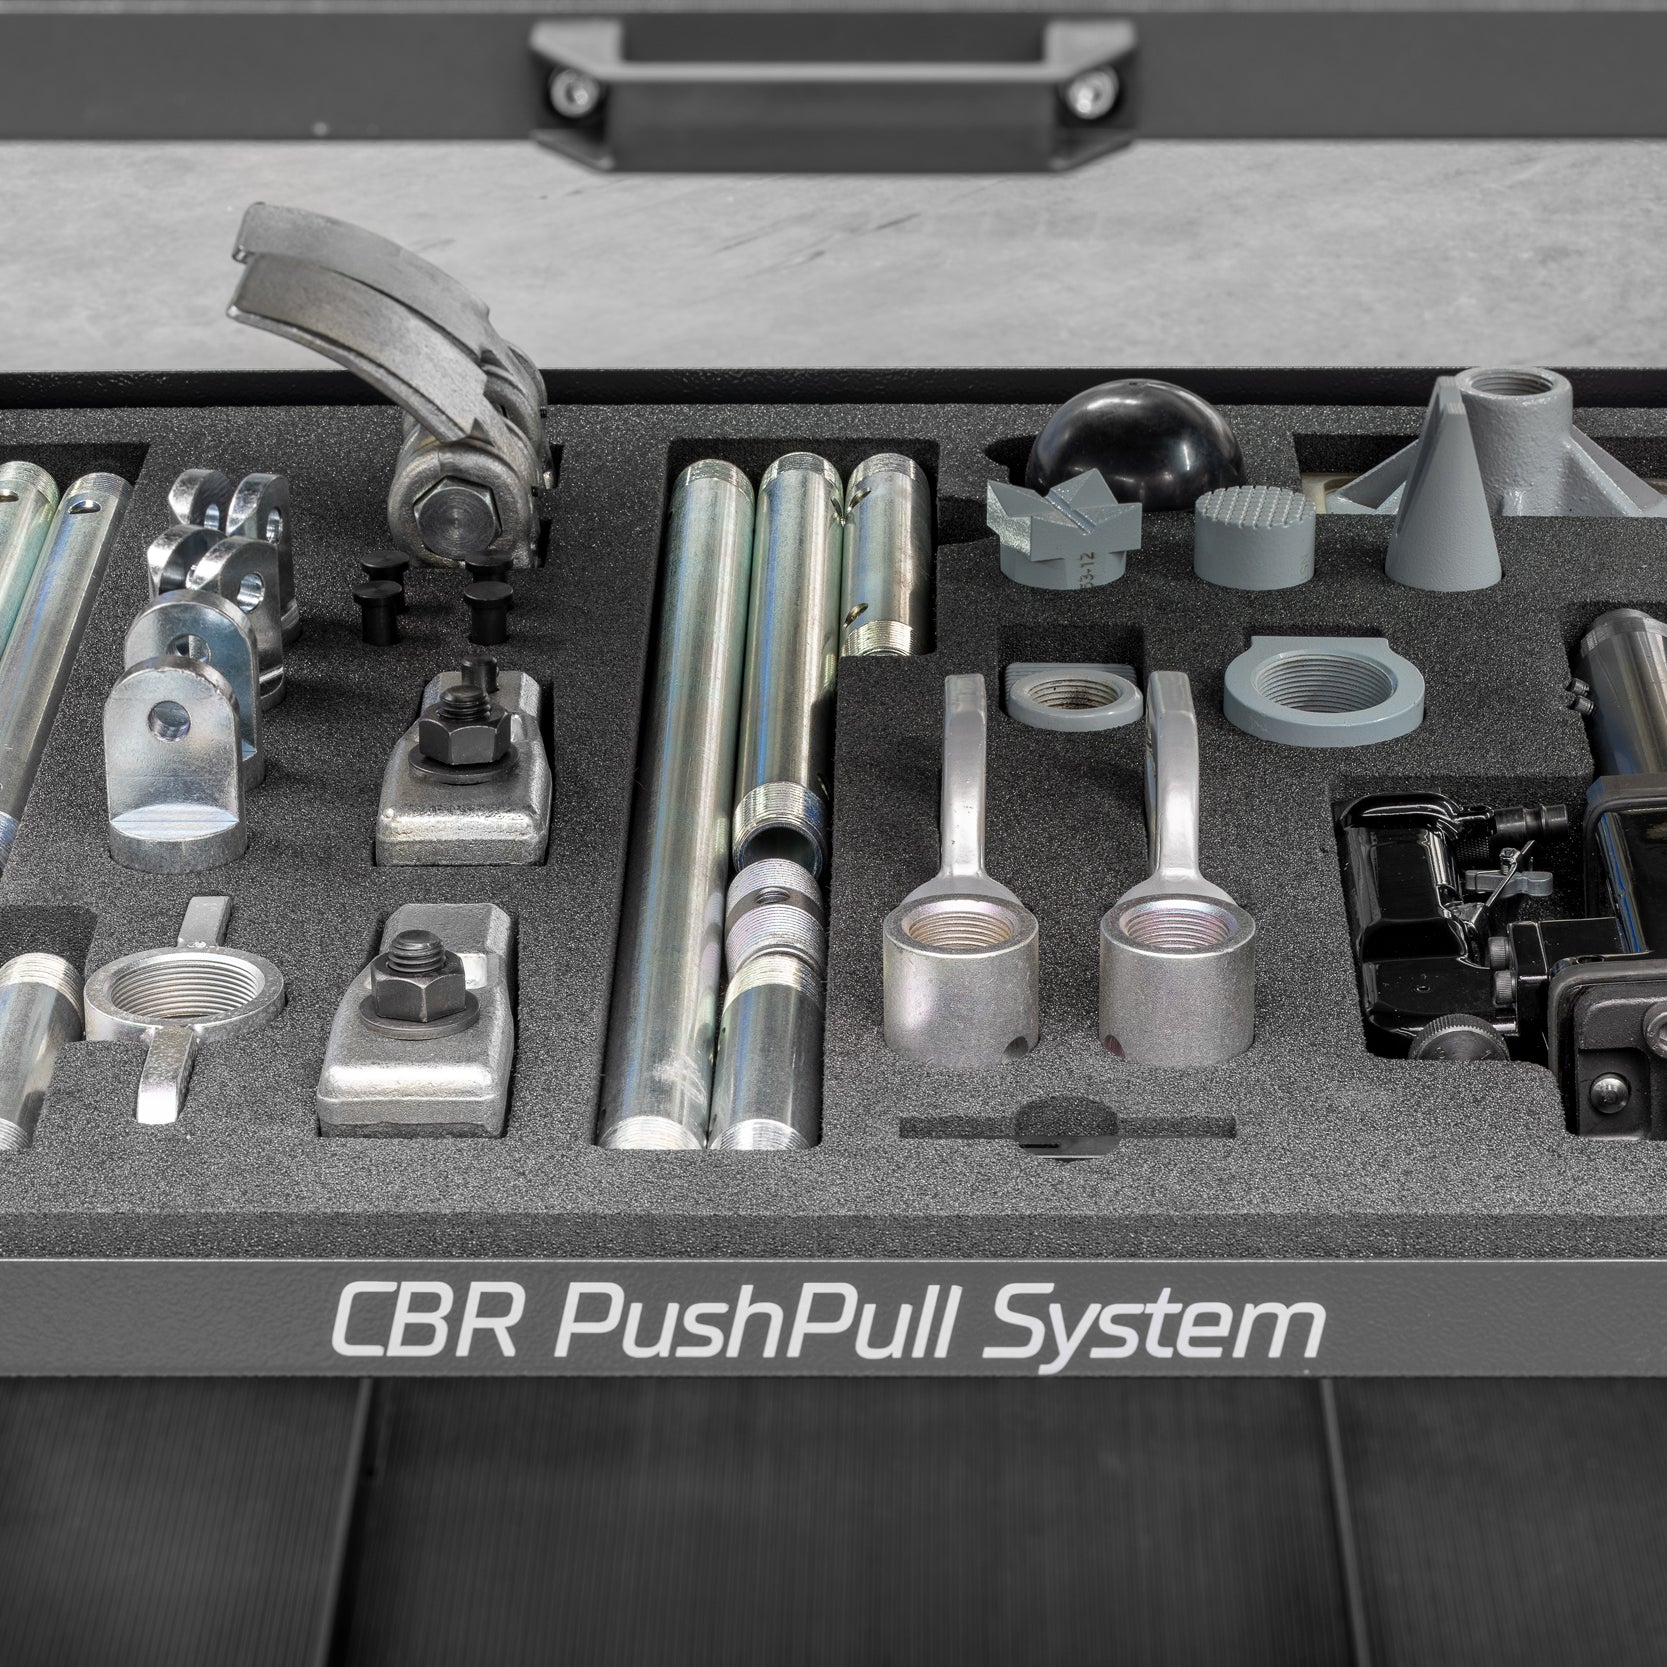 CBR PushPull system